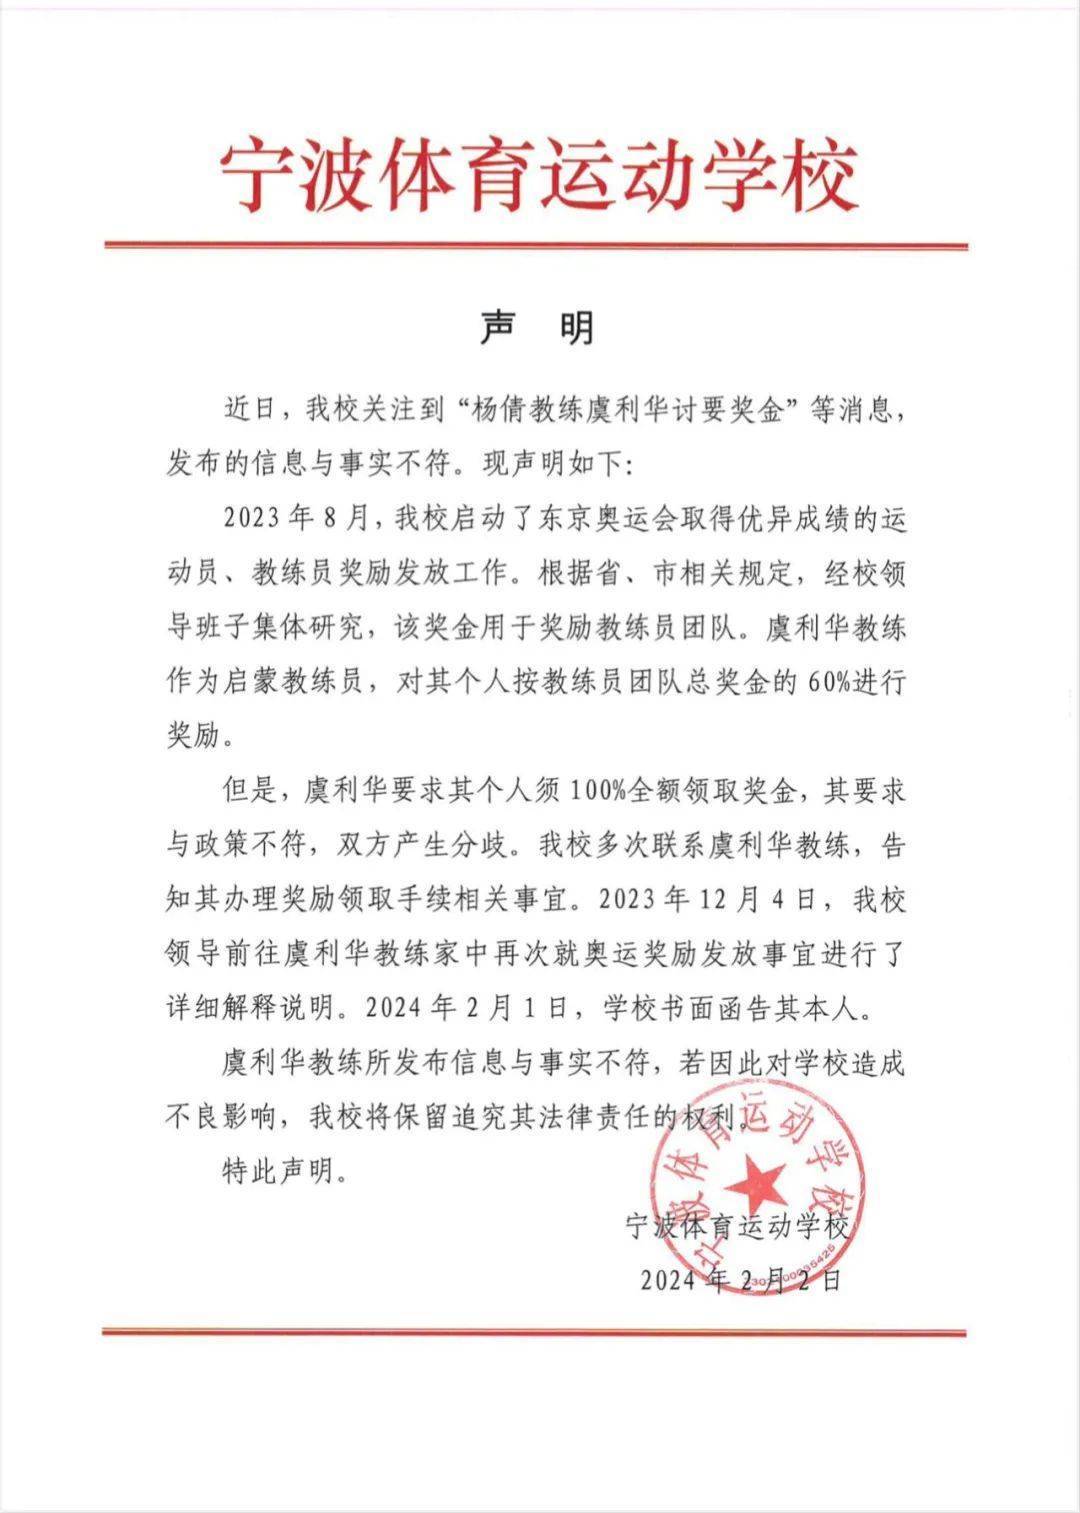 奥运冠军杨倩启蒙教练发文“讨薪” 宁波体校回应称与事实不符